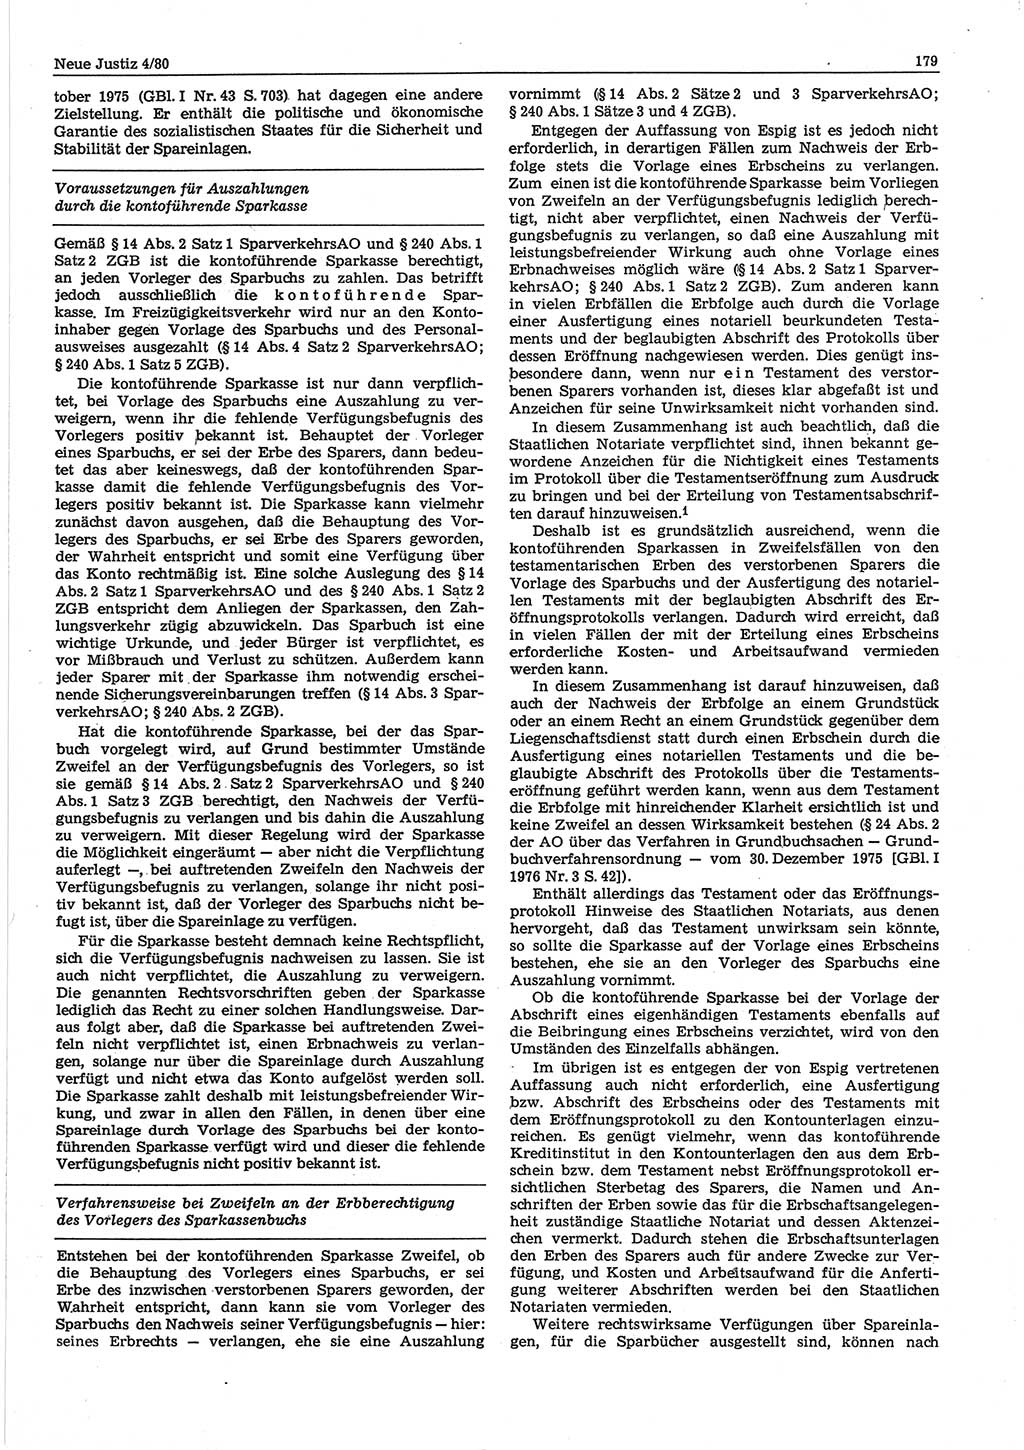 Neue Justiz (NJ), Zeitschrift für sozialistisches Recht und Gesetzlichkeit [Deutsche Demokratische Republik (DDR)], 34. Jahrgang 1980, Seite 179 (NJ DDR 1980, S. 179)